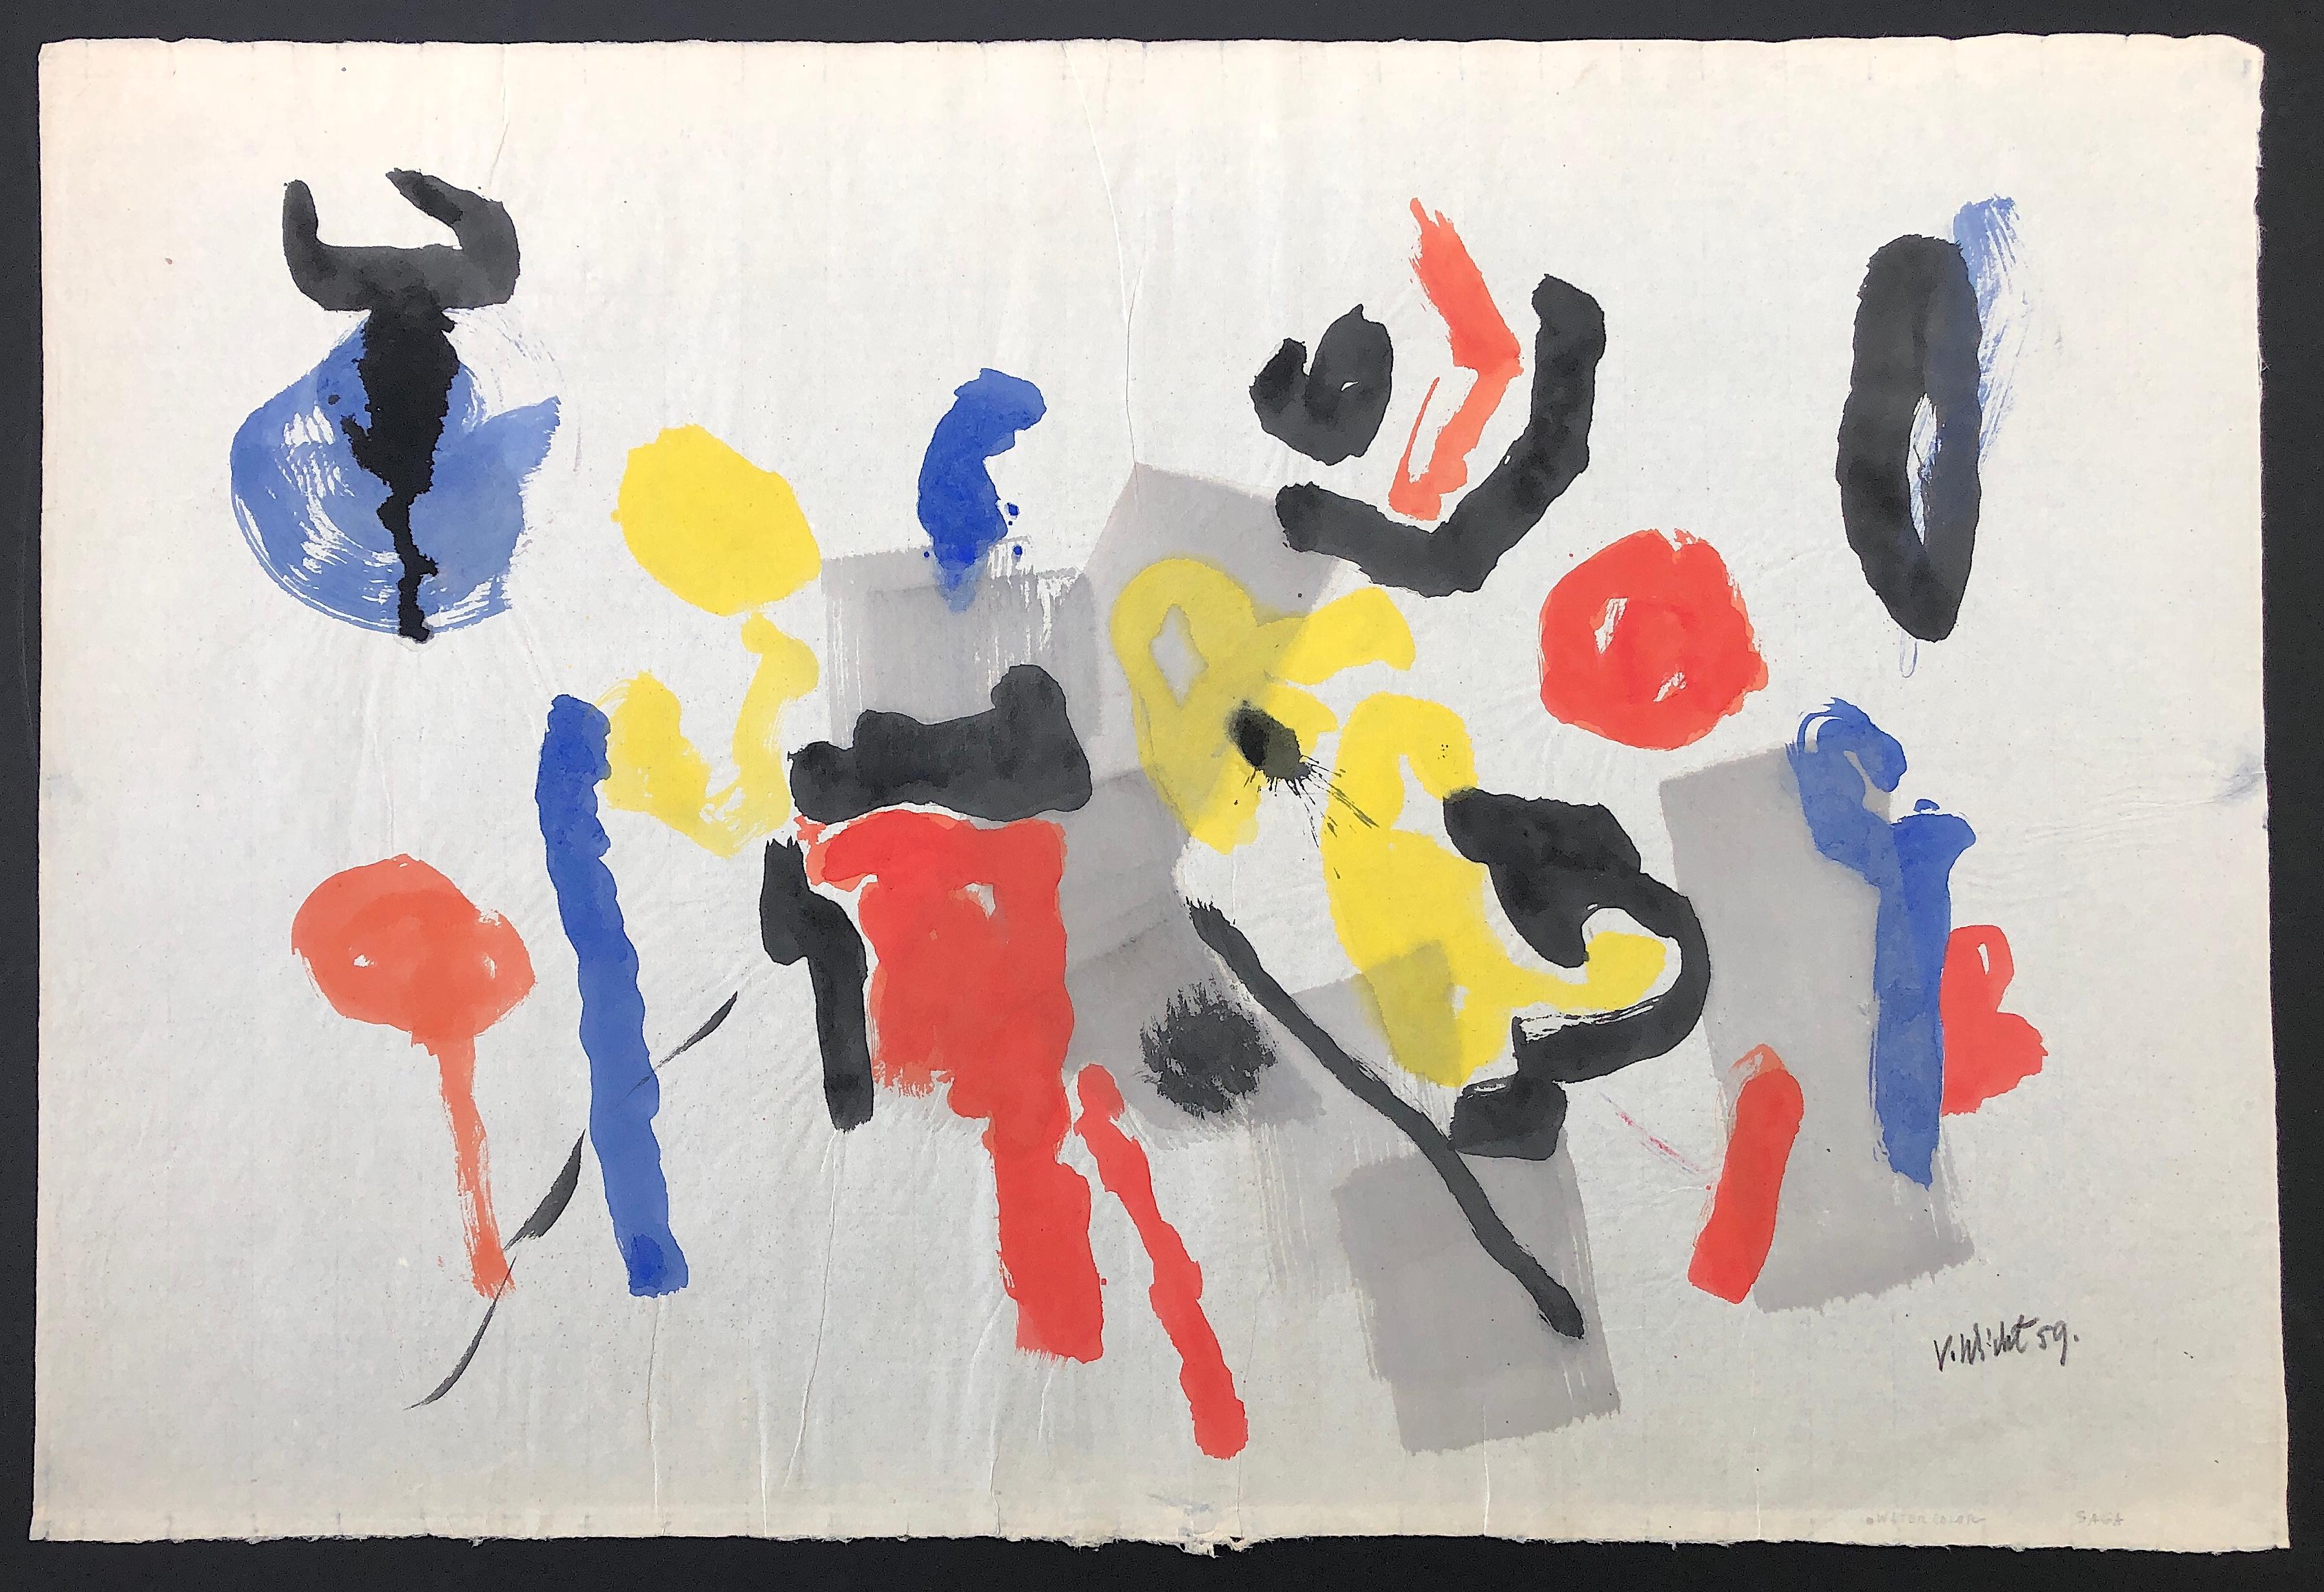 Untitled-113 mixed media abstraction on paper by John Von Wicht - Art by John von Wicht